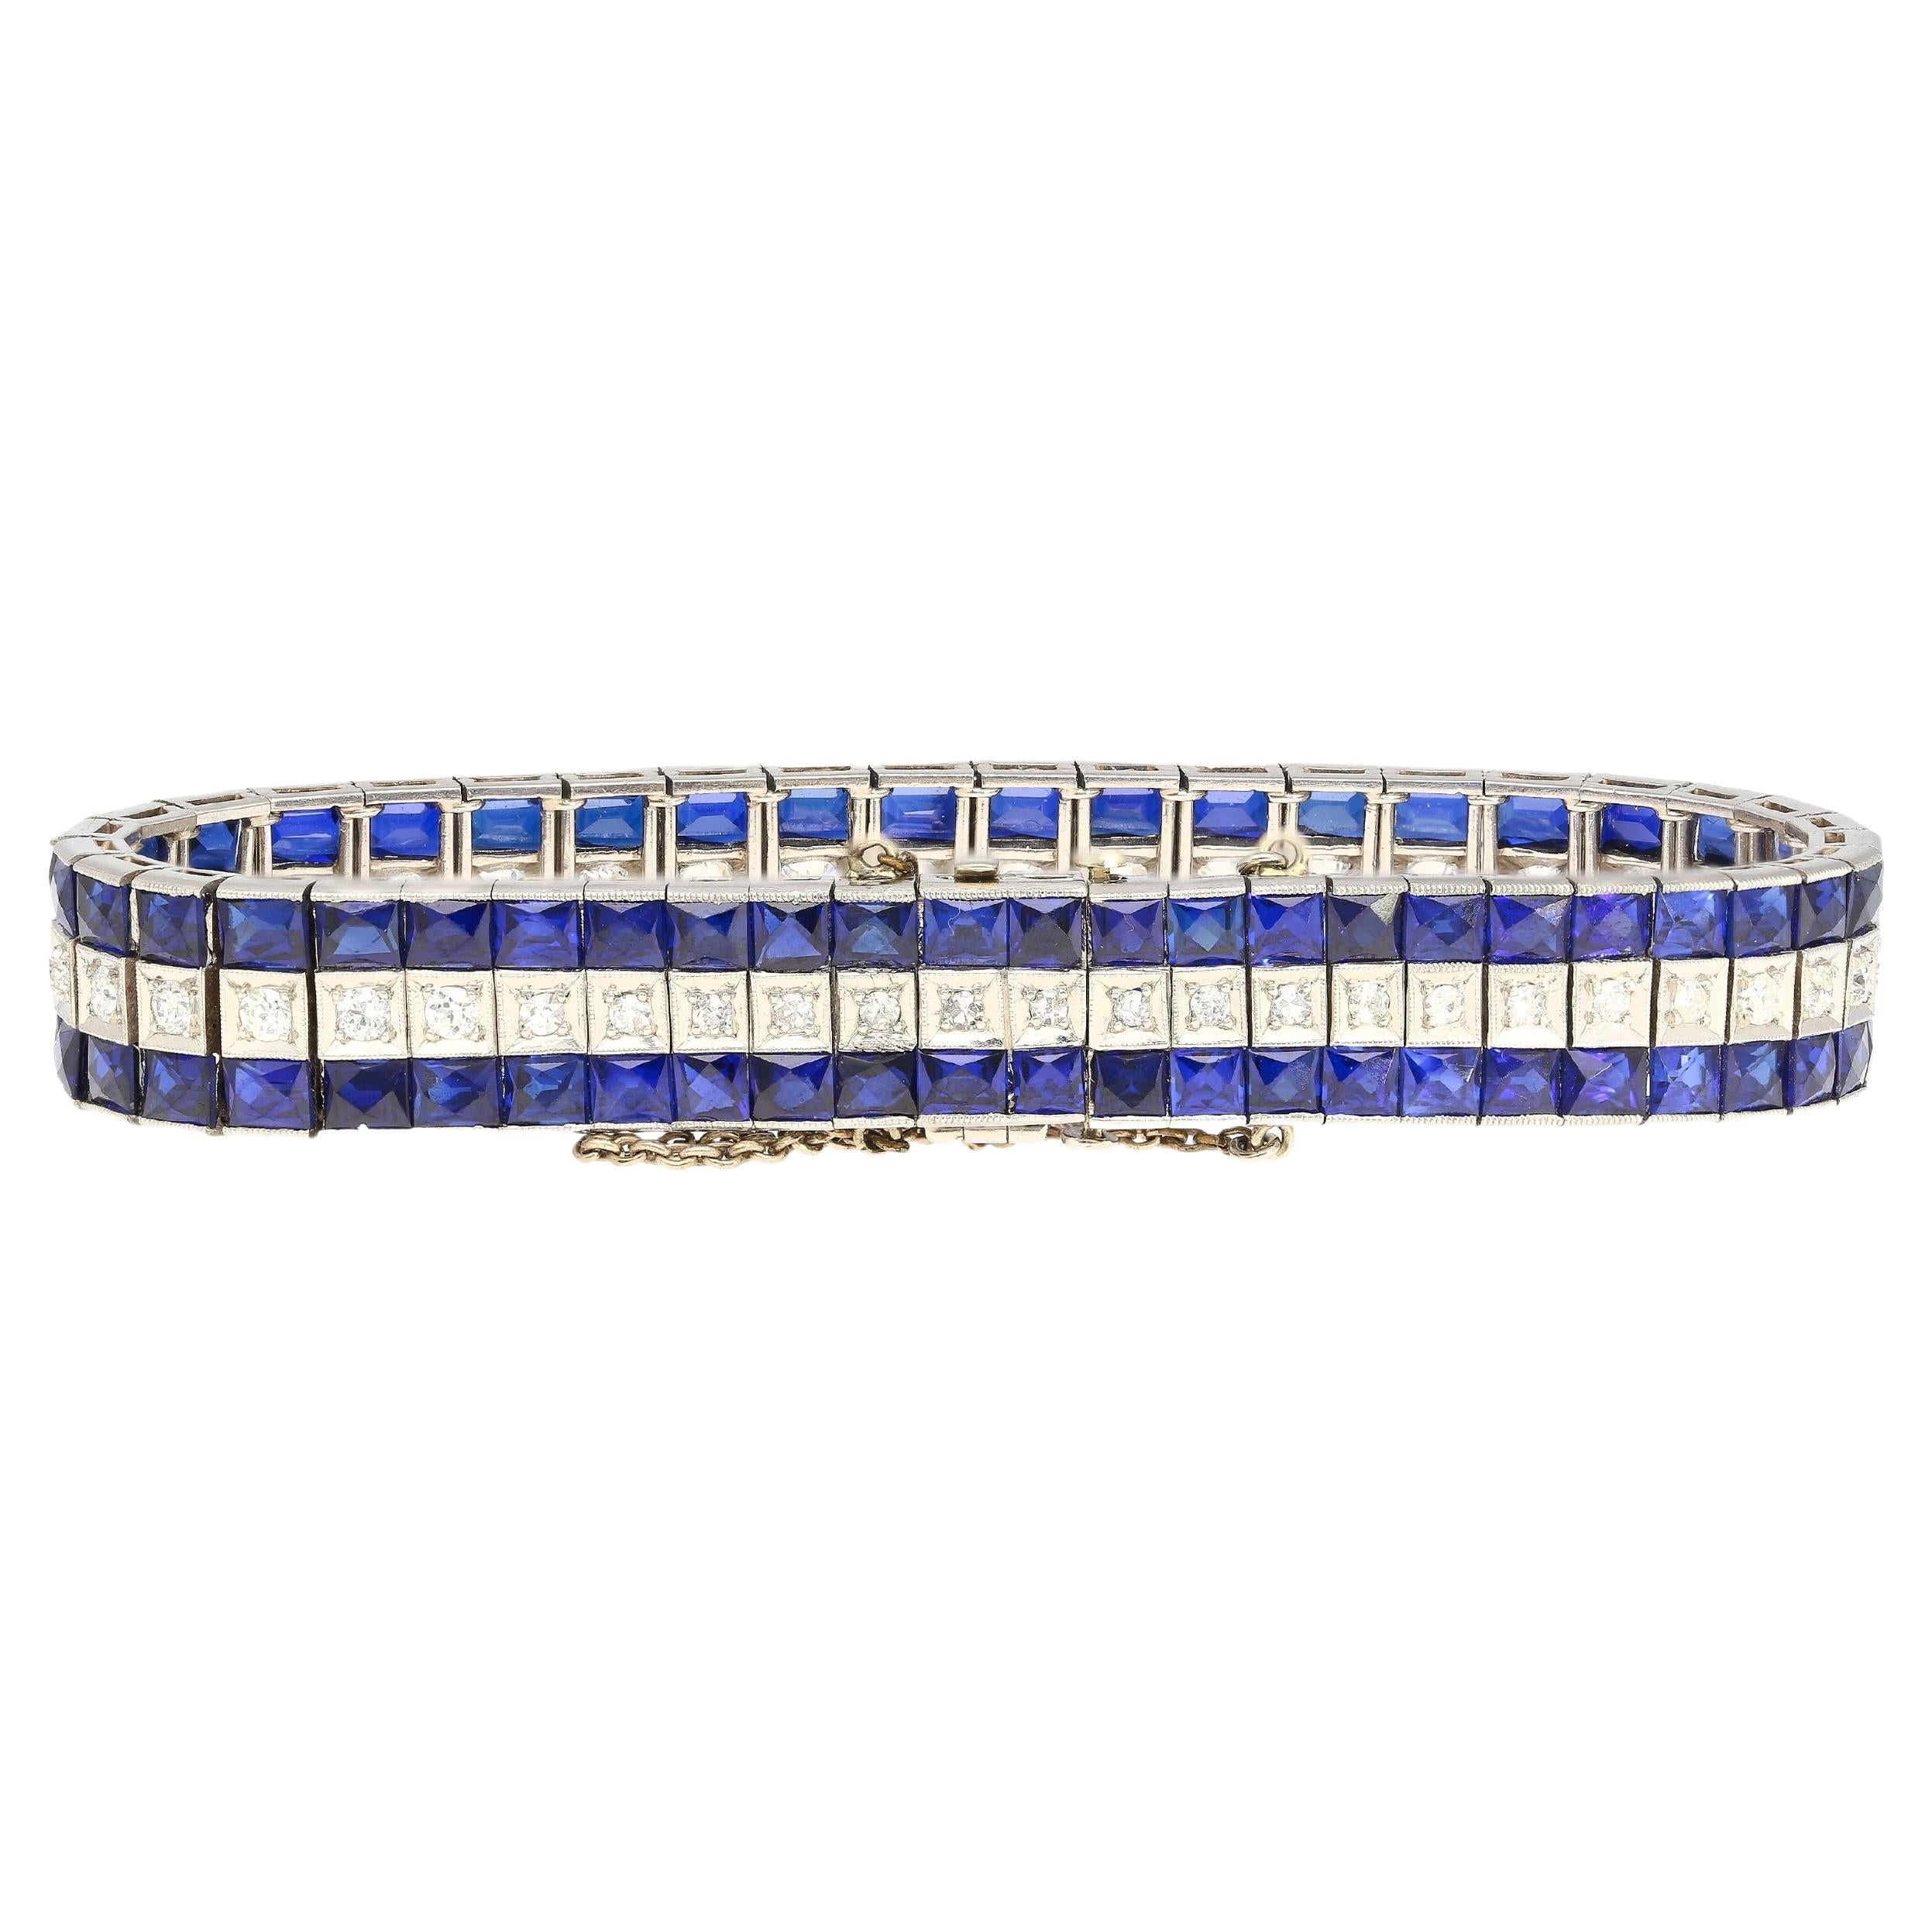 5.50 Karat Vintage Art Deco Platin-Armband mit Diamanten und synthetischen blauen Saphiren. Synthetische Saphire und Rubine waren in der späten Art-Déco- und Retro-Ära weit verbreitet. Wie in diesem meisterhaft handgefertigten Stück Geschichte zu